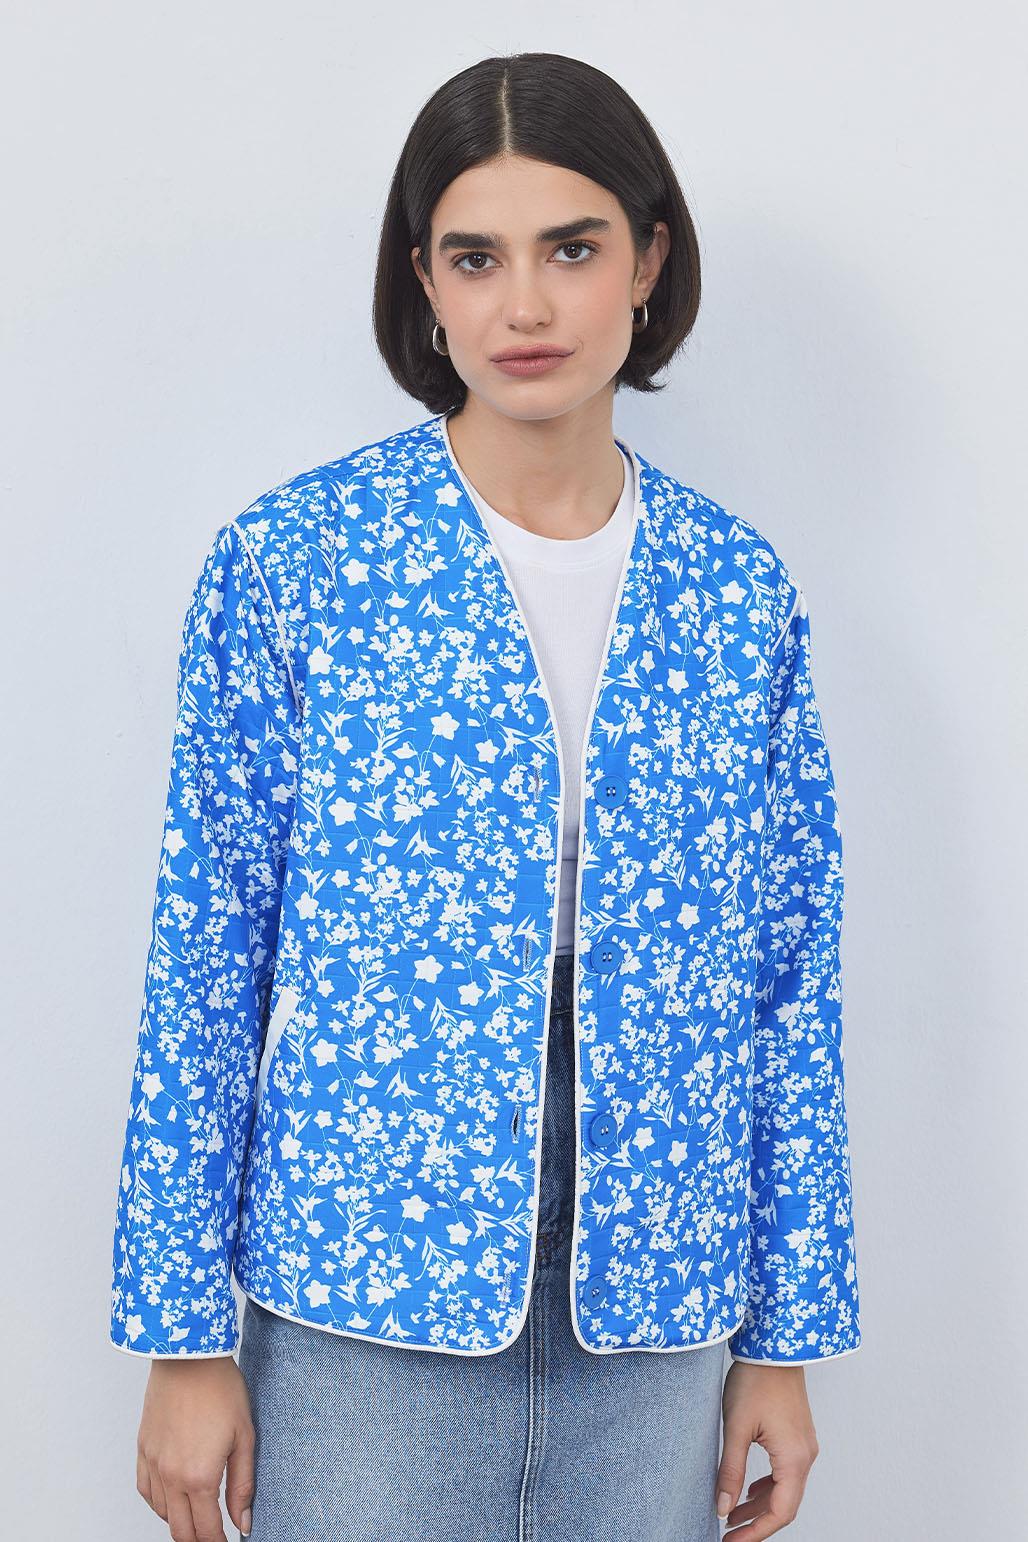 Inda Quilted Patterned Jacket Blue